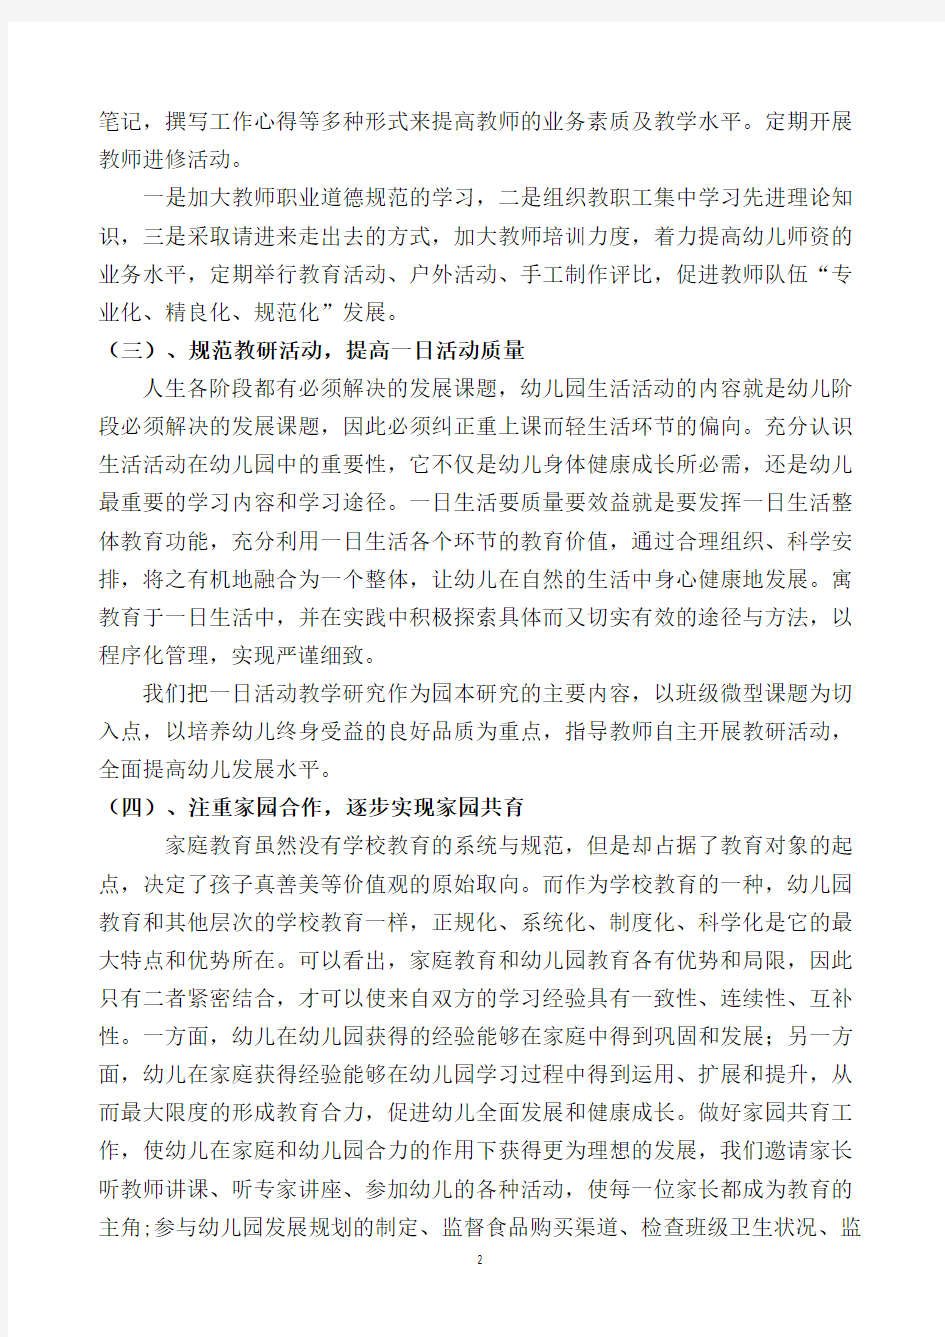 园长督学汇报材料(2020年整理).pdf